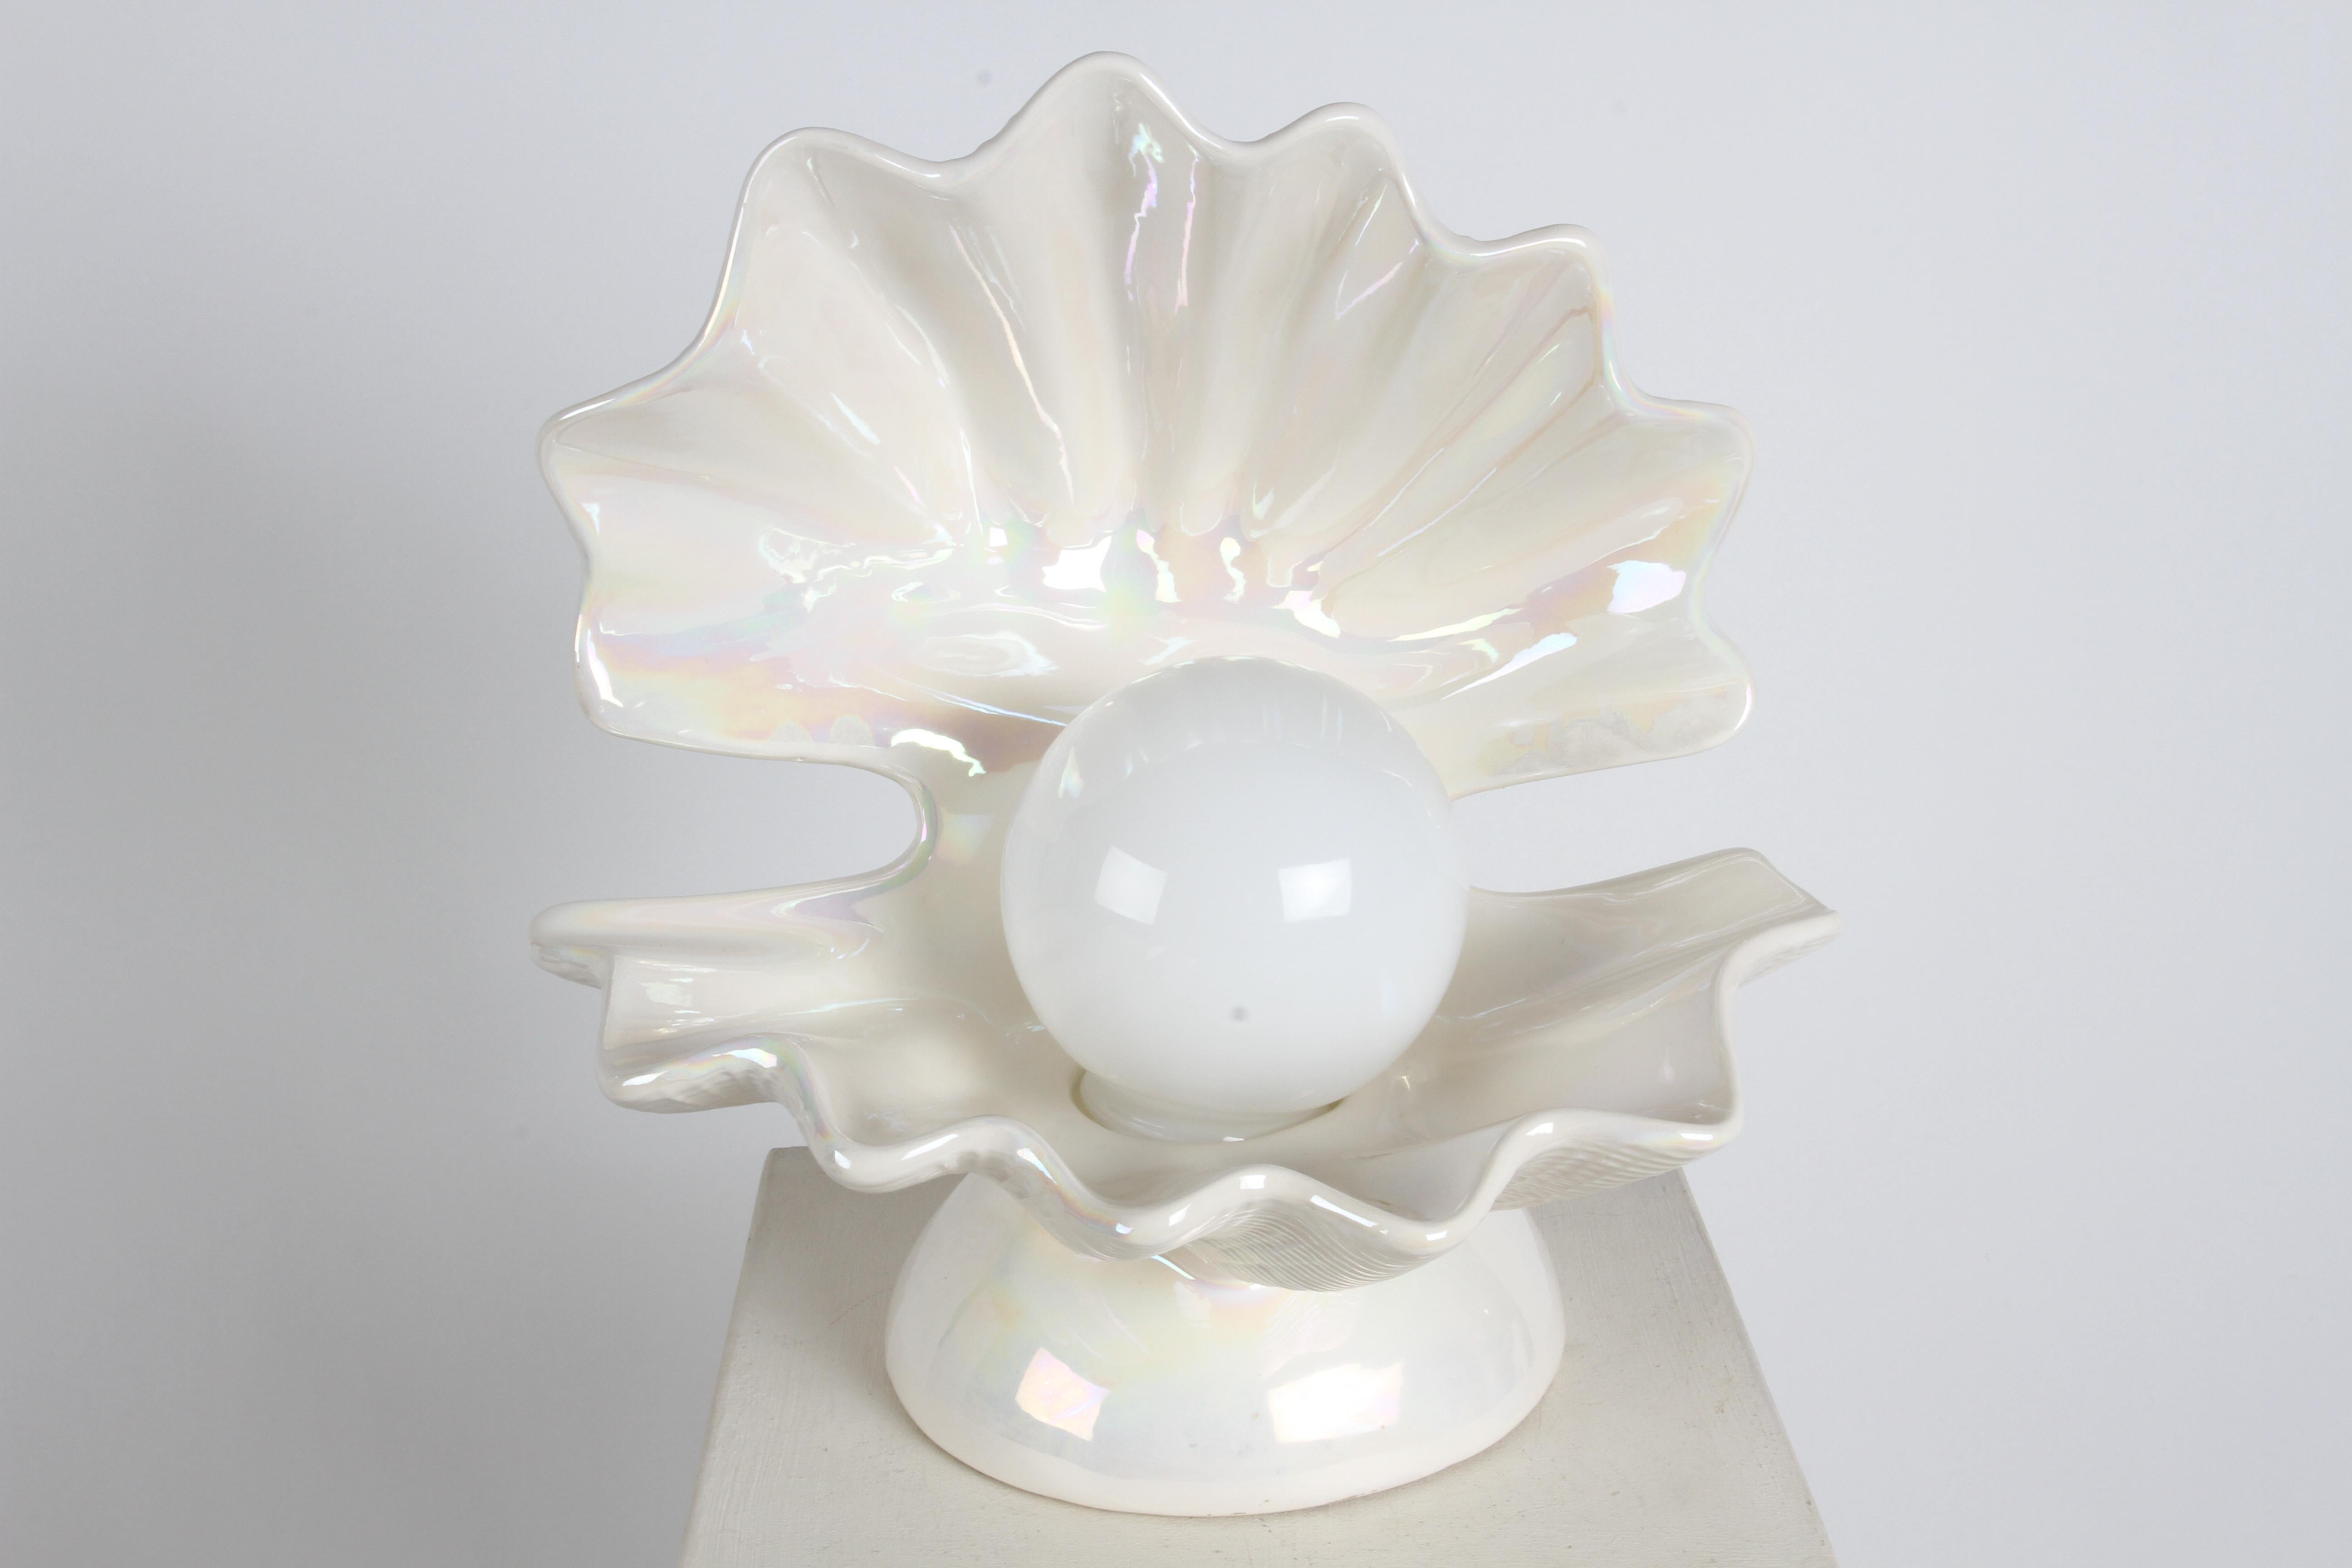  Lampe de table de style Hollywood Regency en céramique de forme ouverte en forme de coquille d'huître sur un piédestal rond surélevé, en émail blanc nacré,  avec un globe blanc en guise de perle. Cette lampe renvoie à la période glamour de l'Art